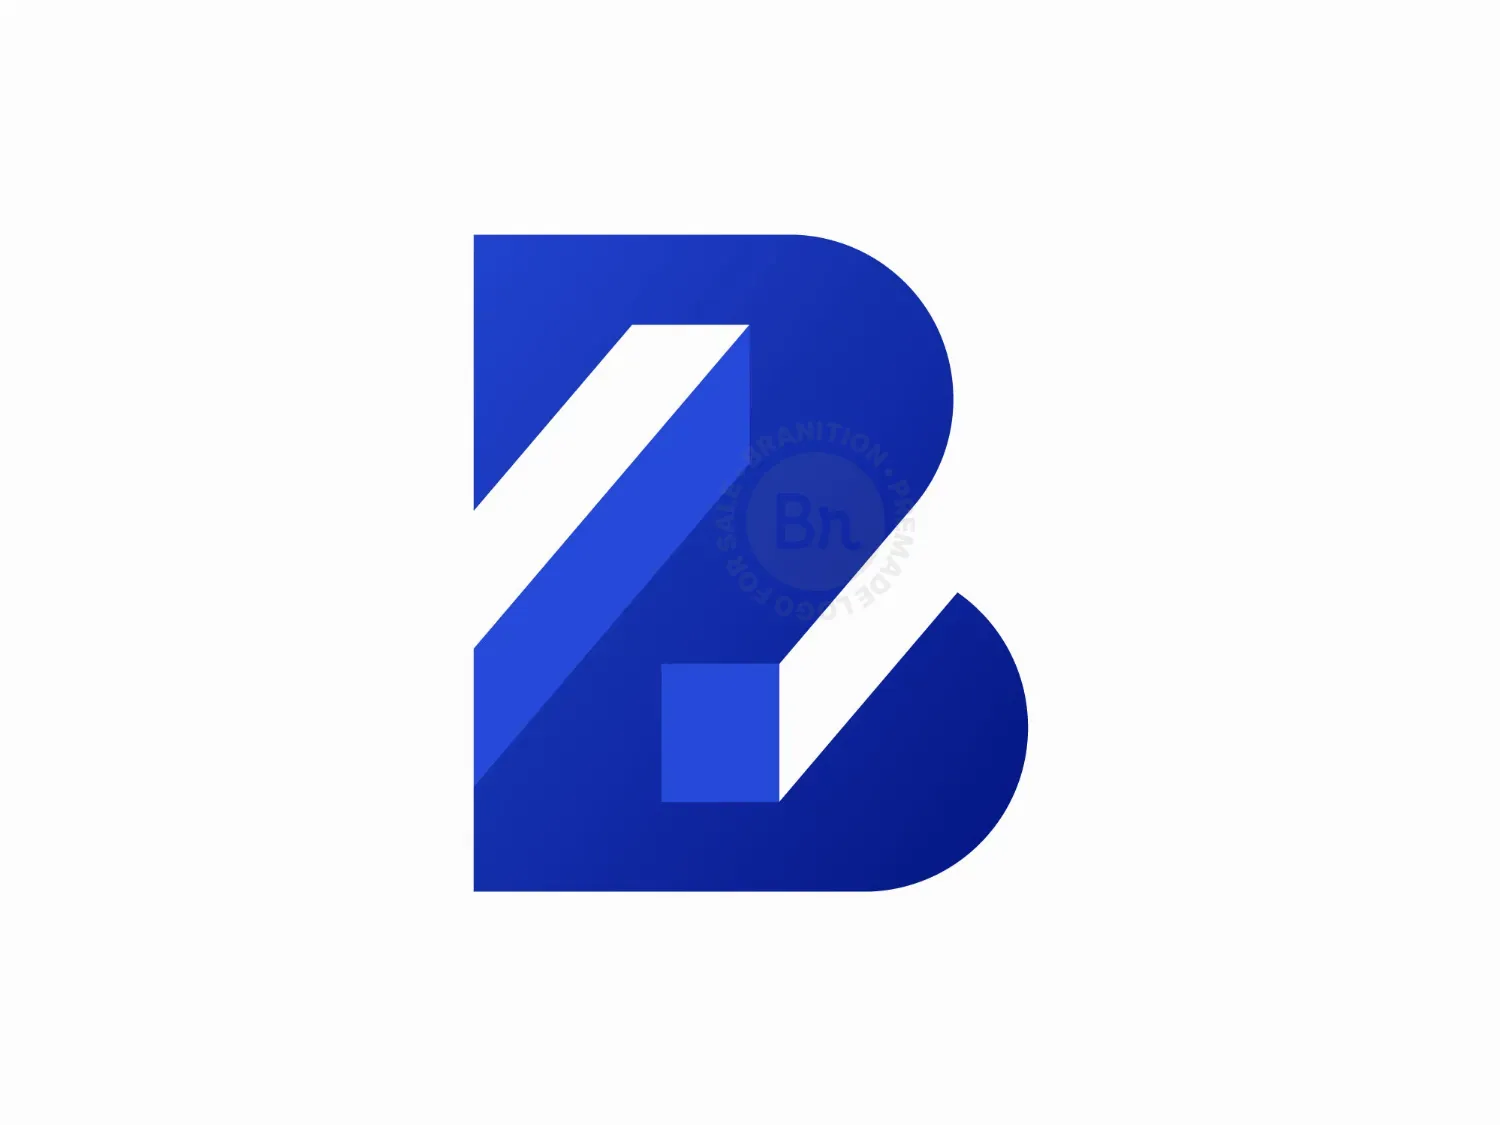 BZ Monogram